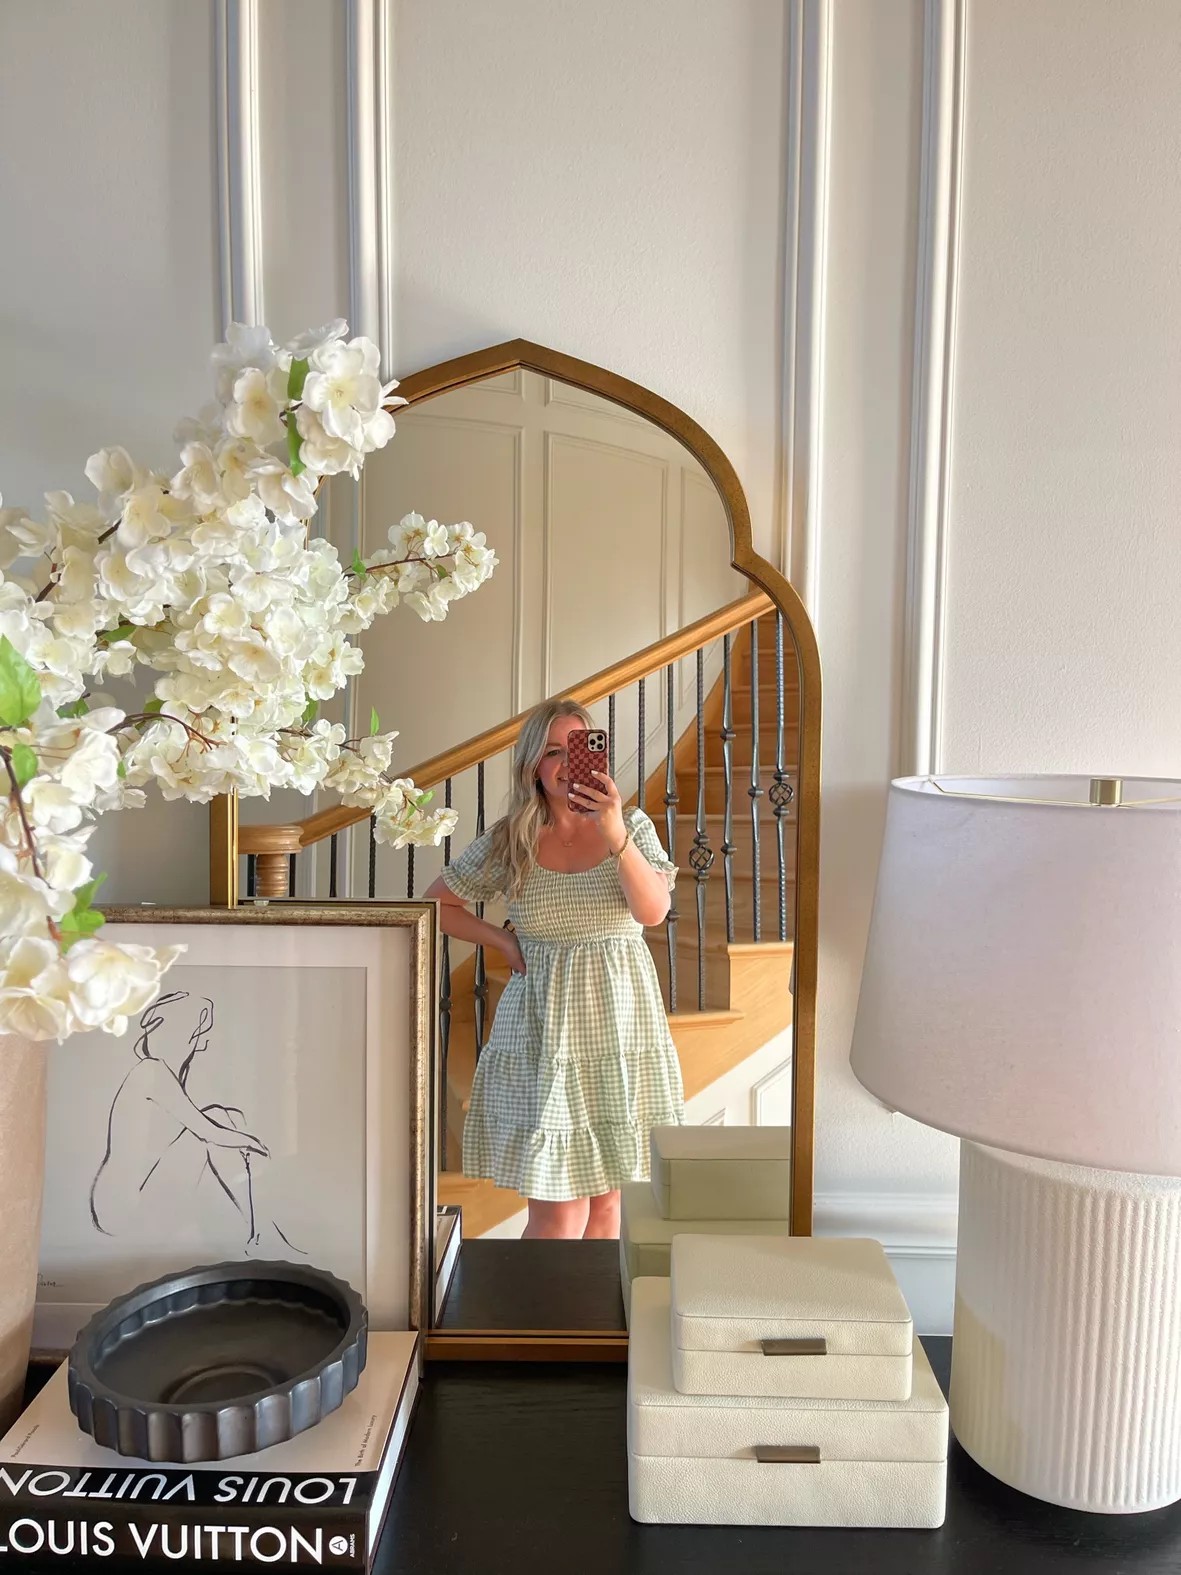 Louis Vuitton home decor  Decor interior design, Cute home decor, Home  decor